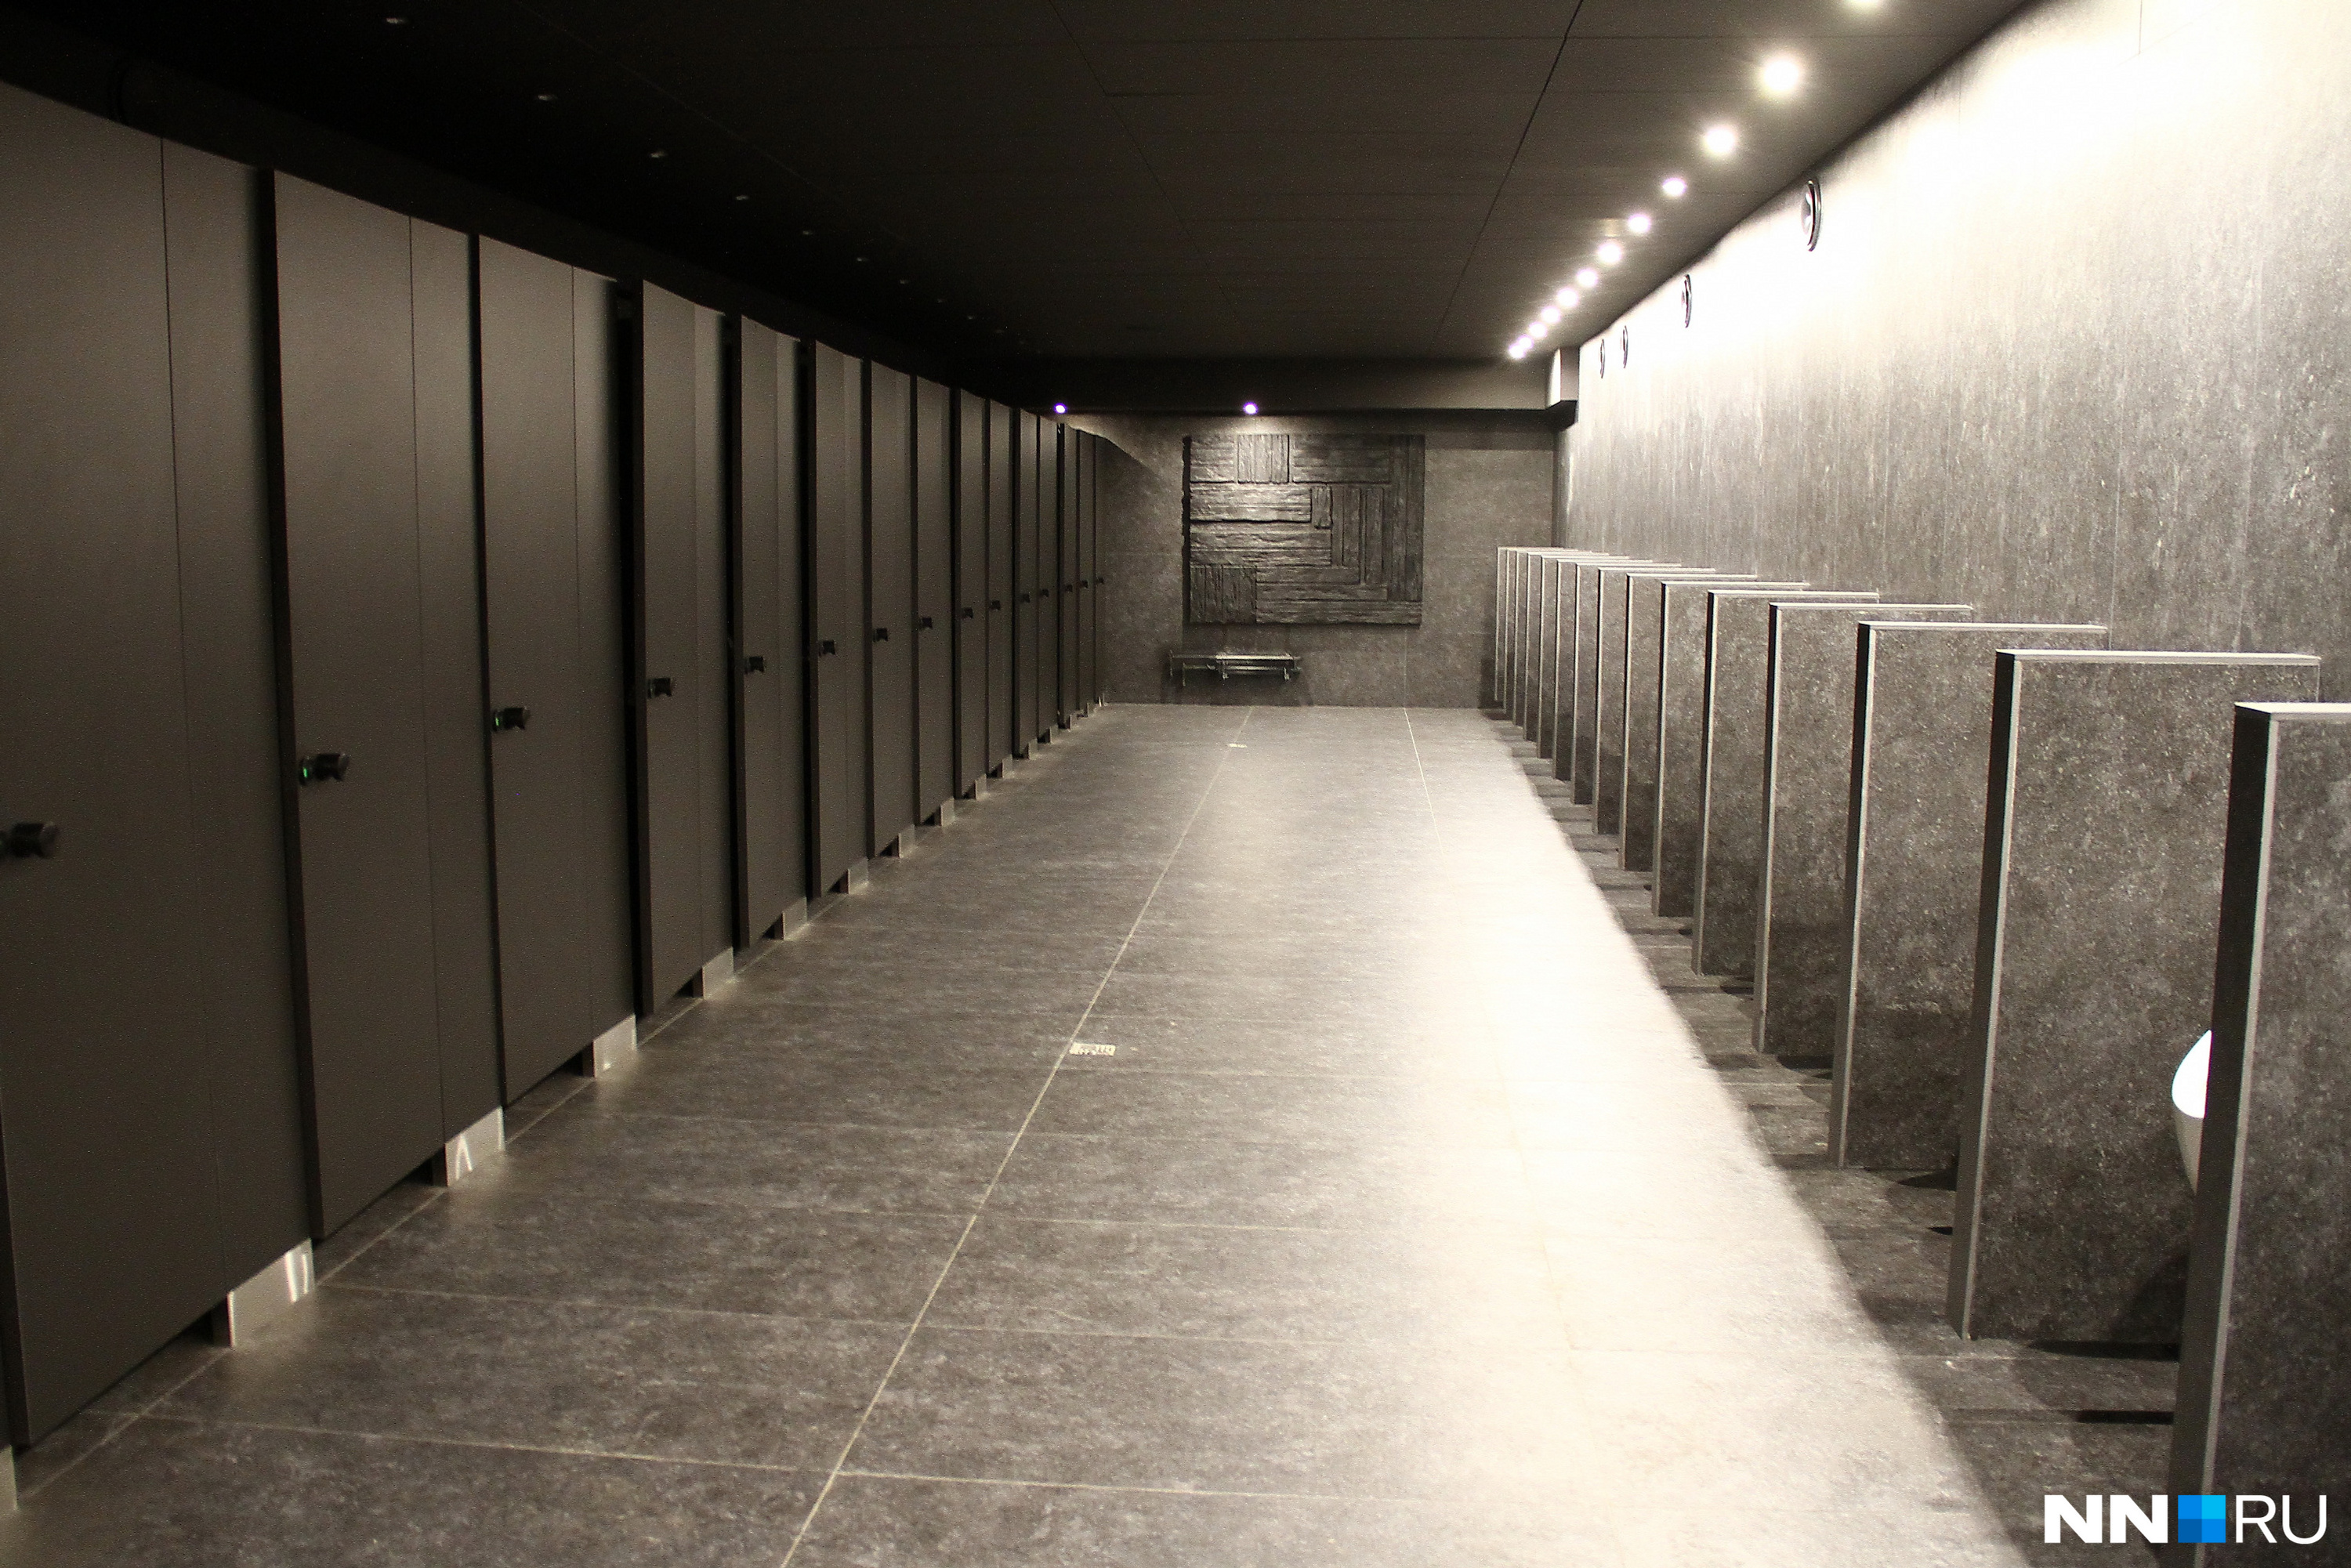 Туалет для мужчин выполнен в тёмном стиле, для женщин — в светлом